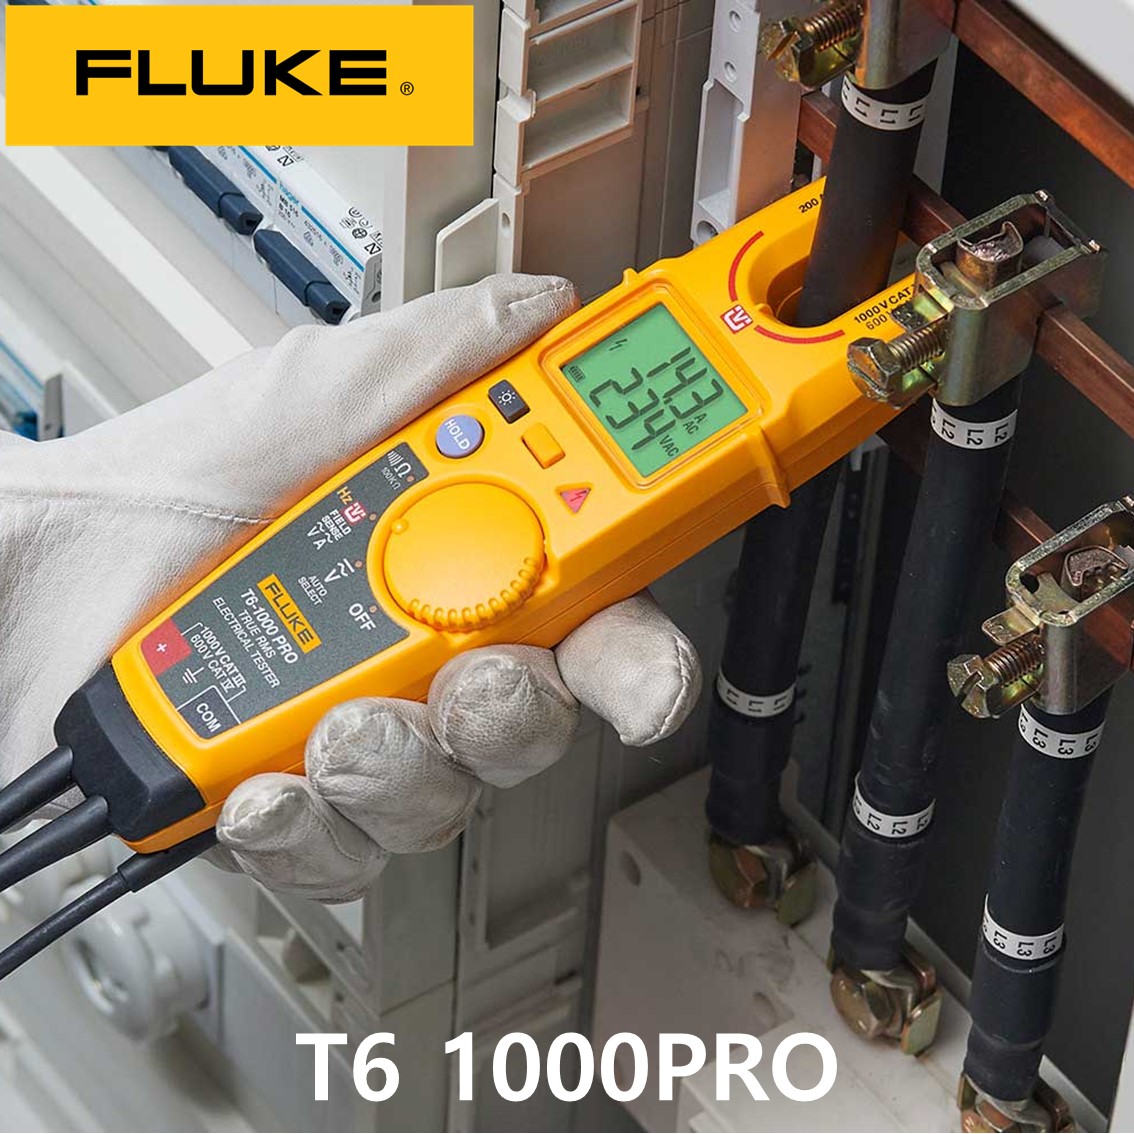 [ FLUKE T6 1000PRO ] 정품 오픈형 클램프미터 (1000V,200A)